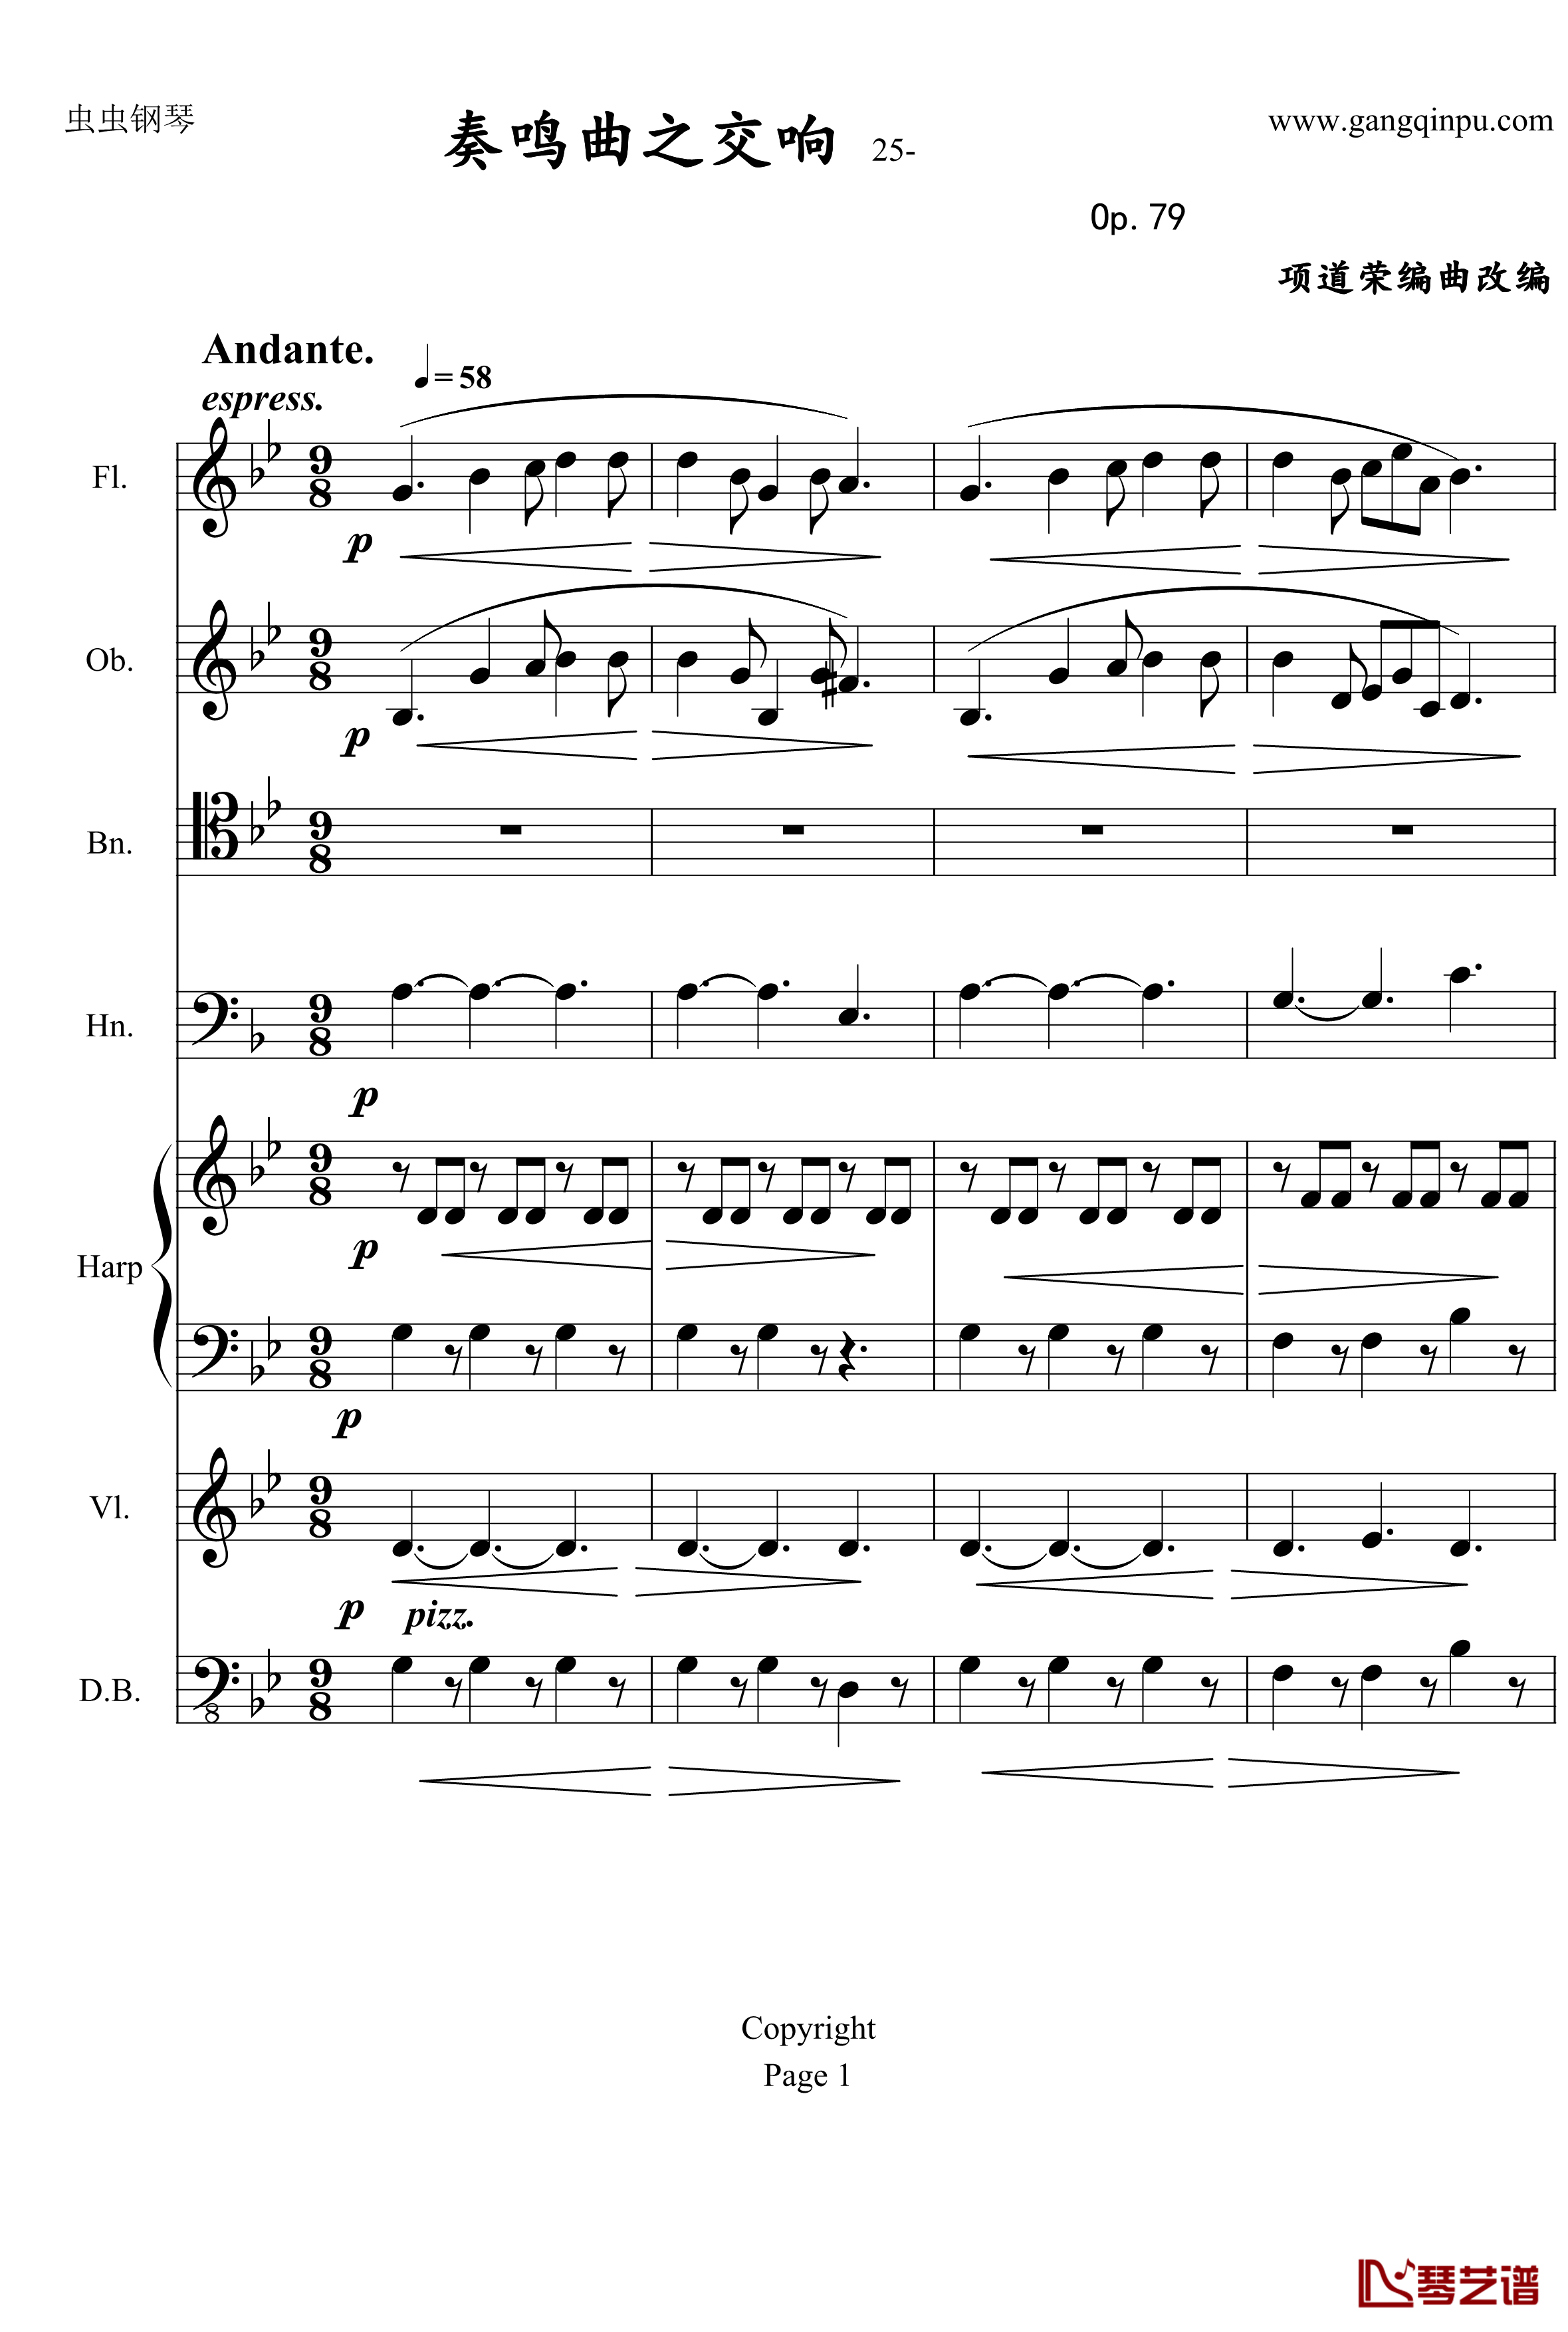 奏鸣曲之交响钢琴谱-第25首-Ⅱ-贝多芬-beethoven1